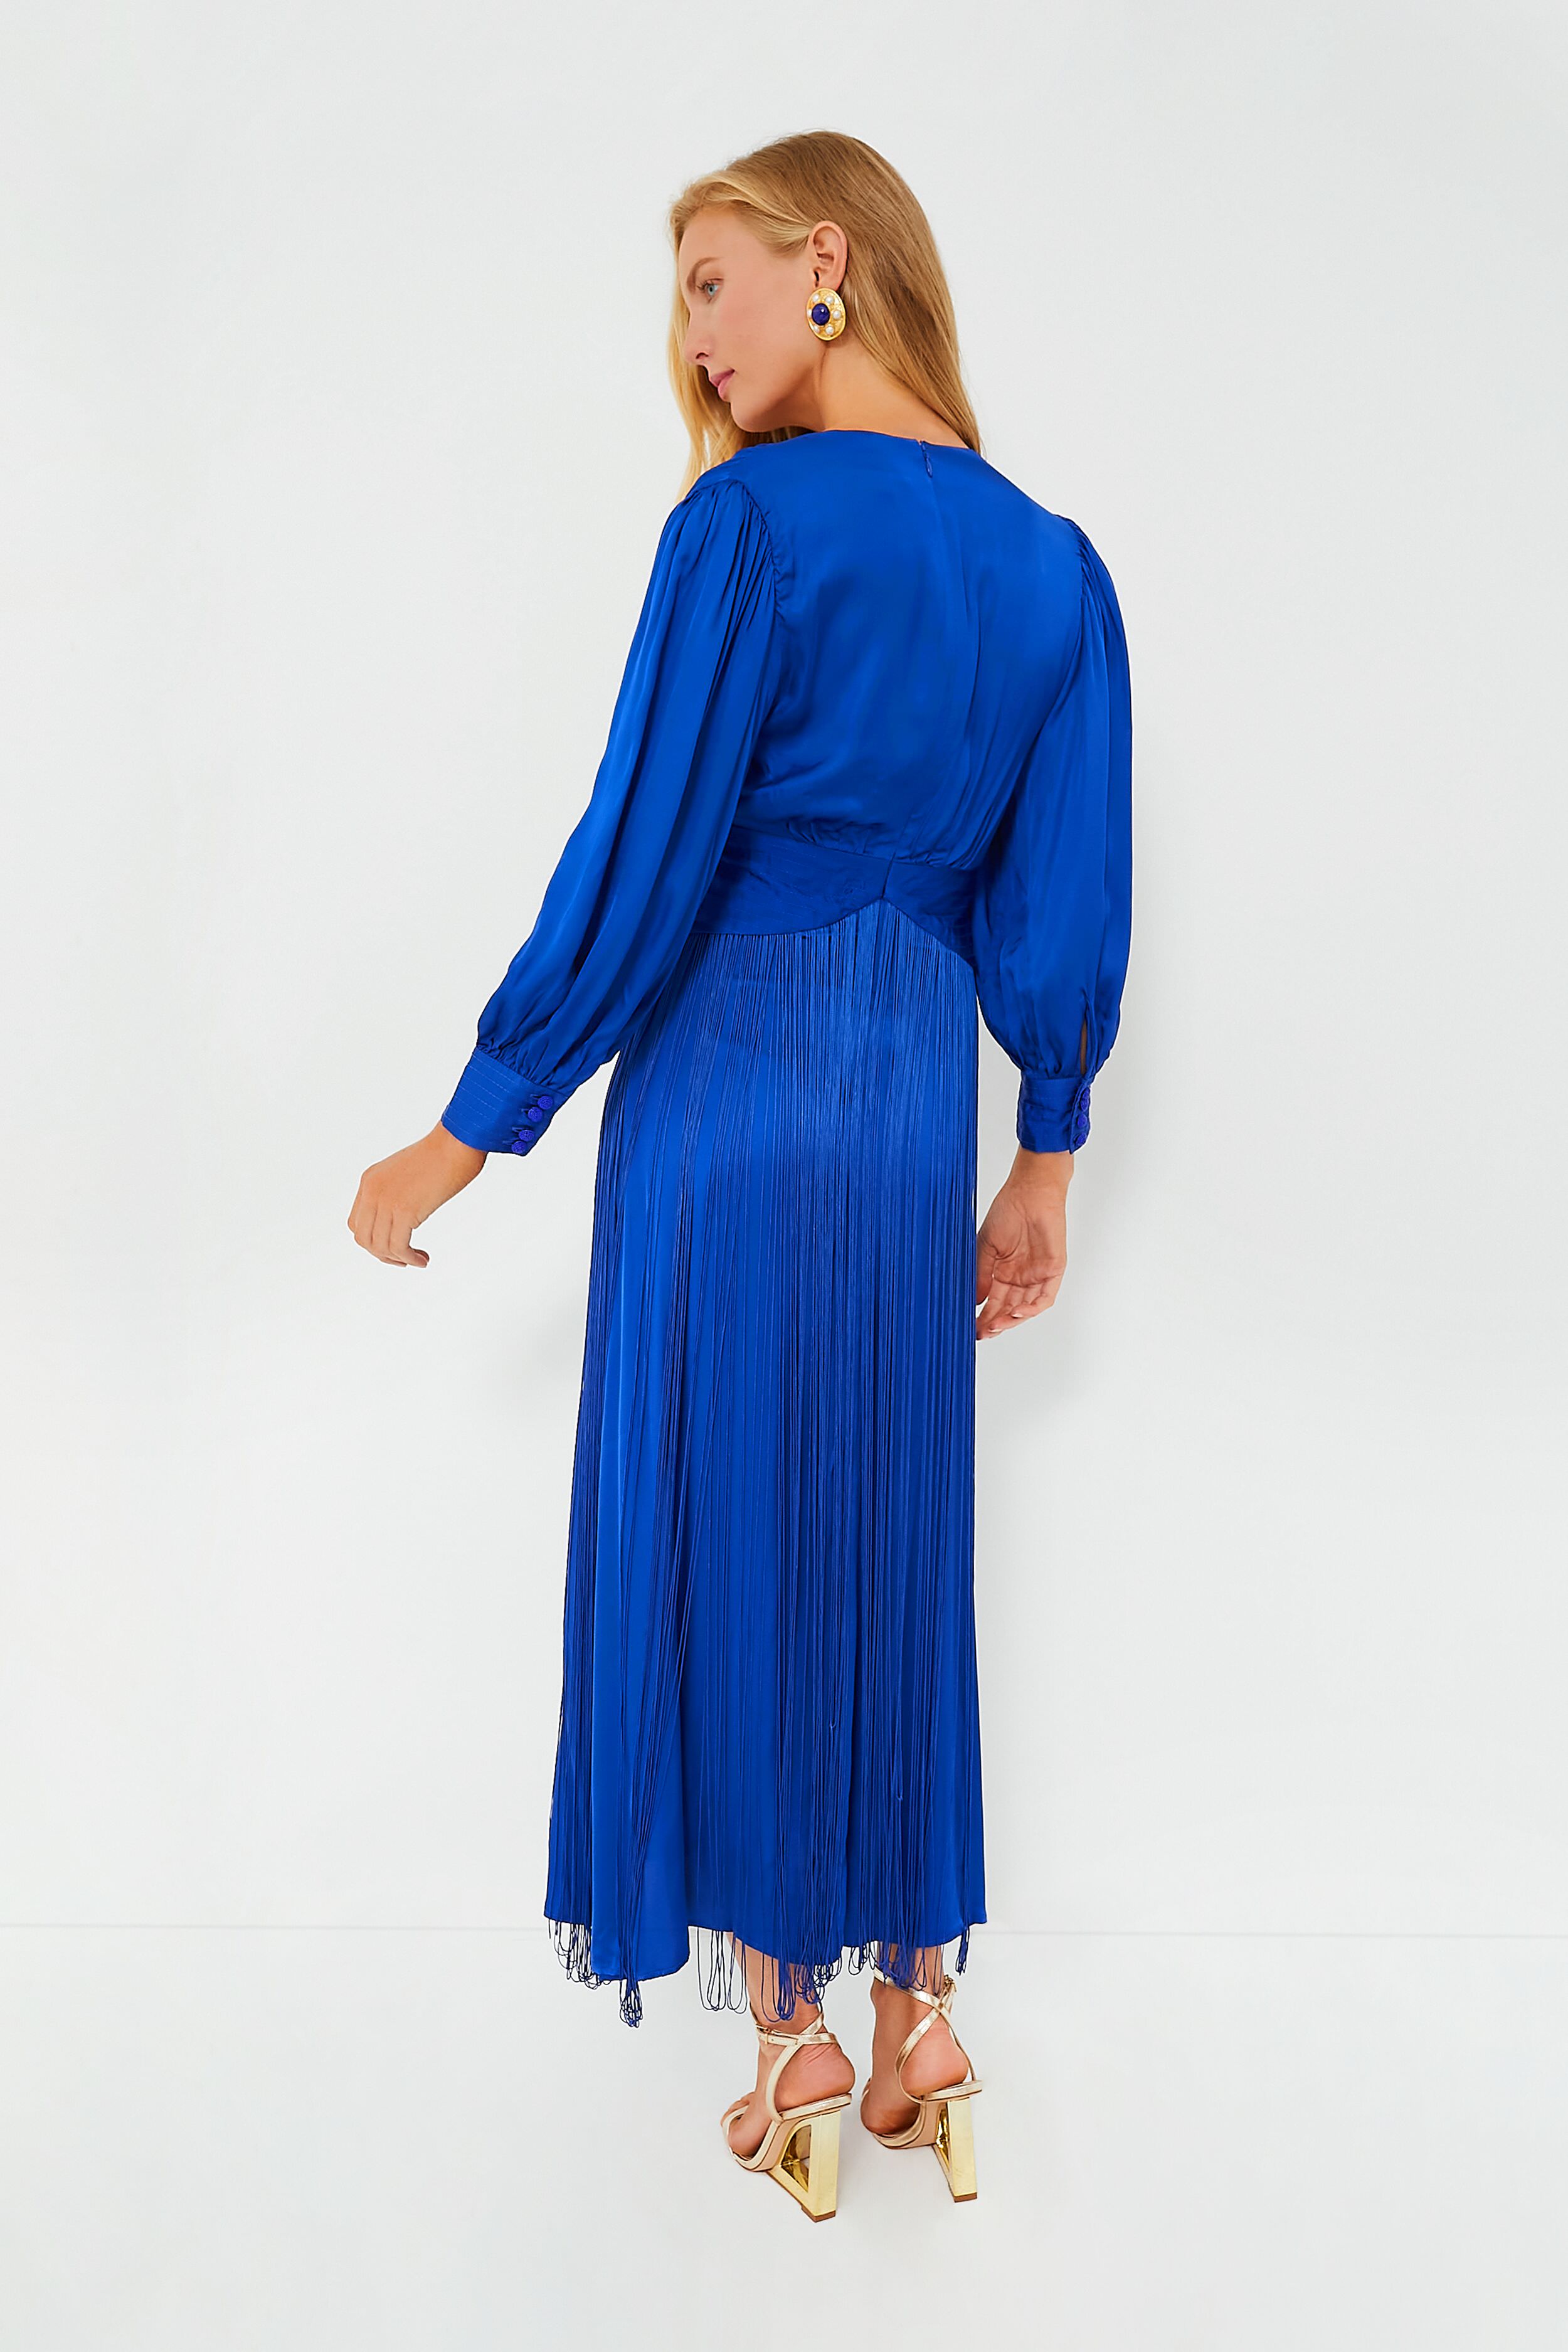 Bisou Bisou Maxi Dress Marbled Blue Built In Bra Size 8